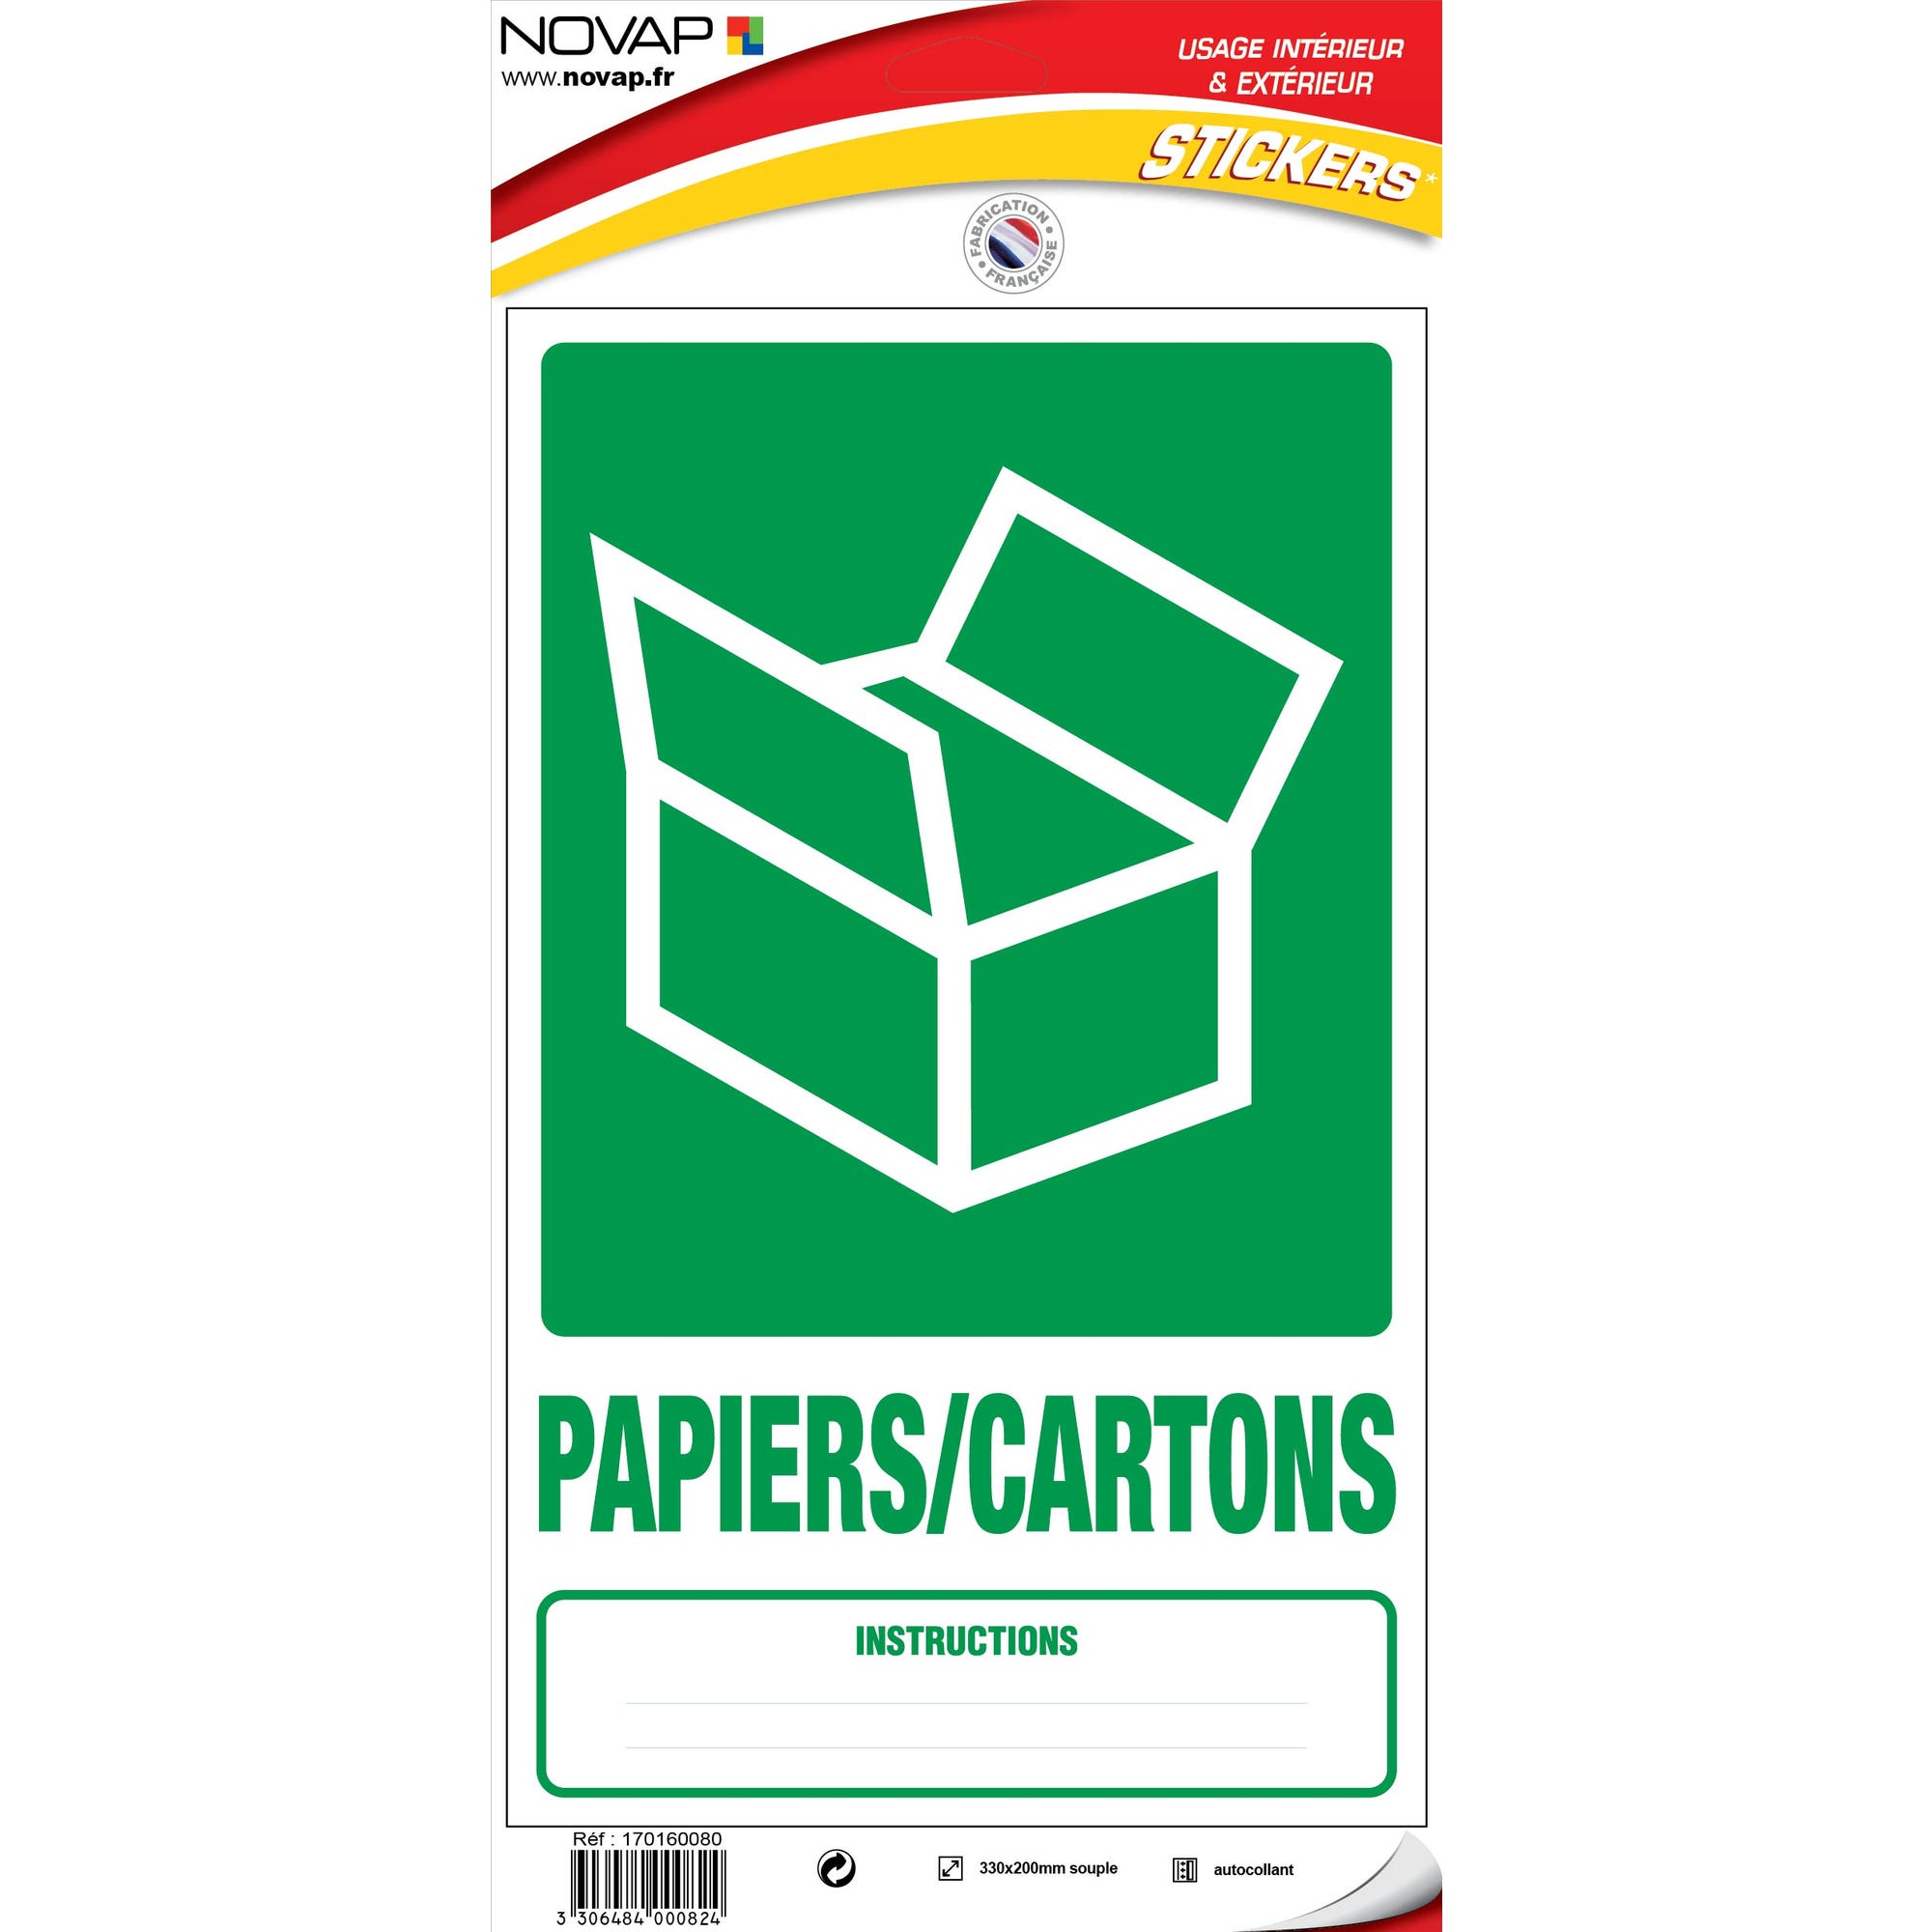 Panneau Dechets papiers / cartons - Vinyle adhésif 330x200mm - 4000824 0